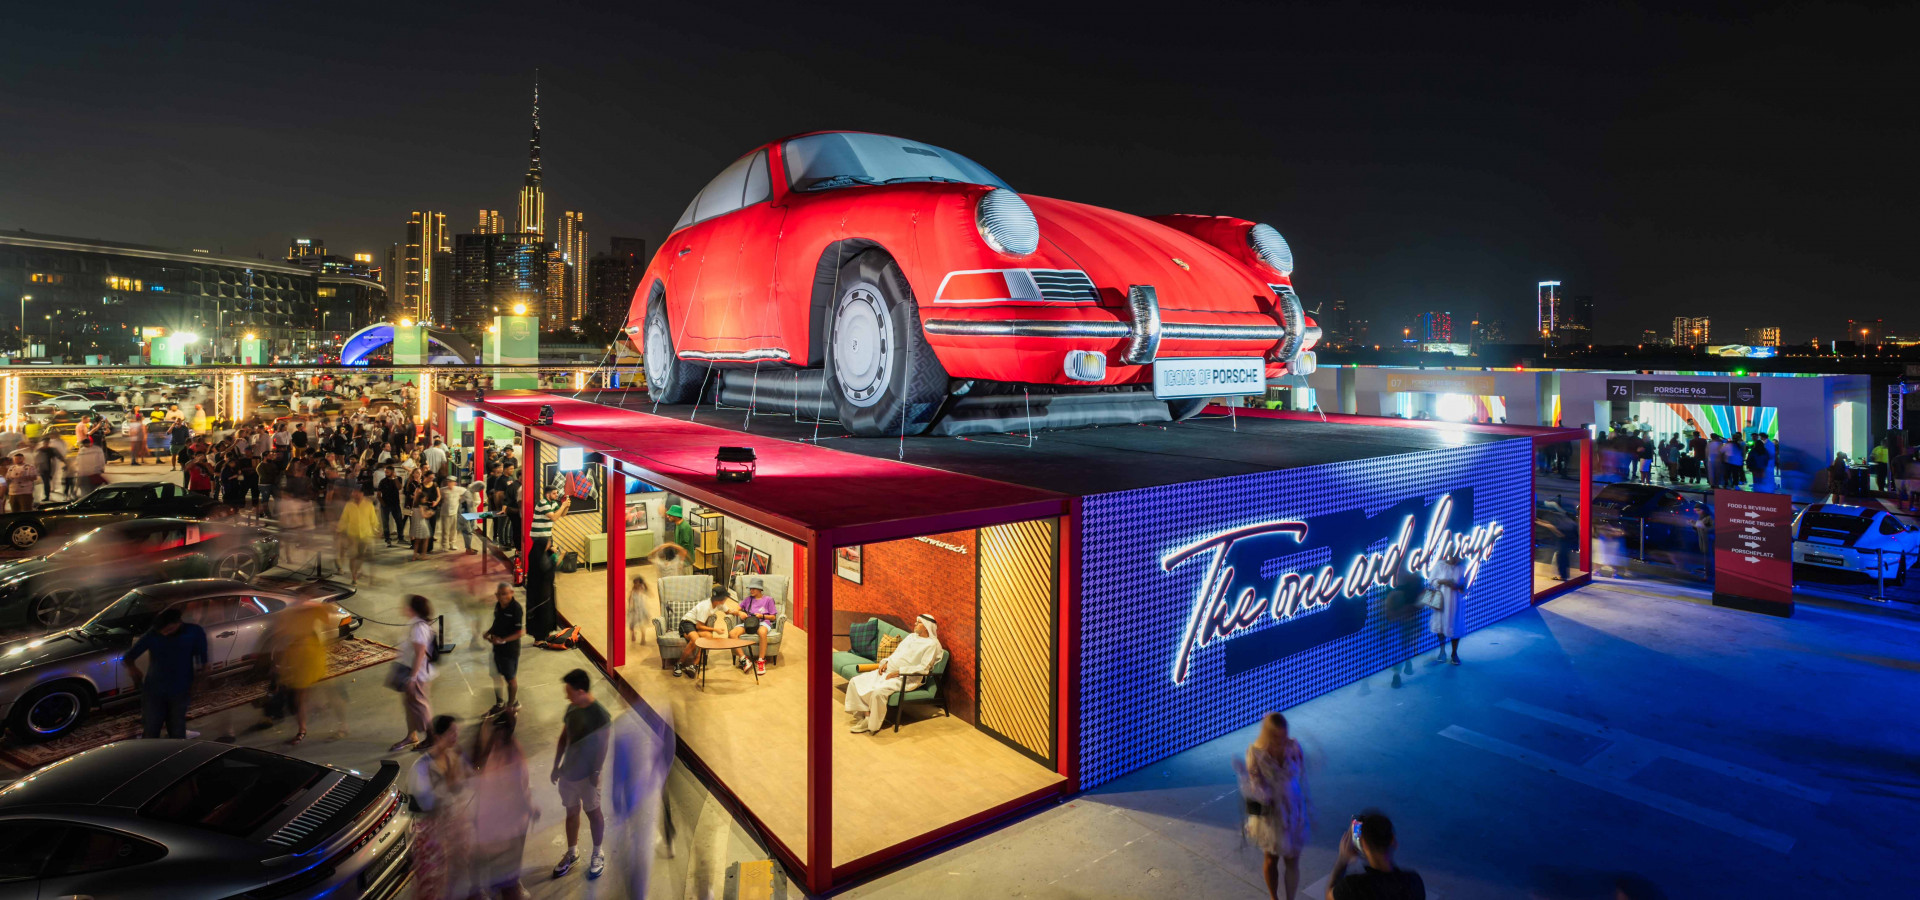 More than 27,000 fans attend Dubai’s Icons of Porsche festival